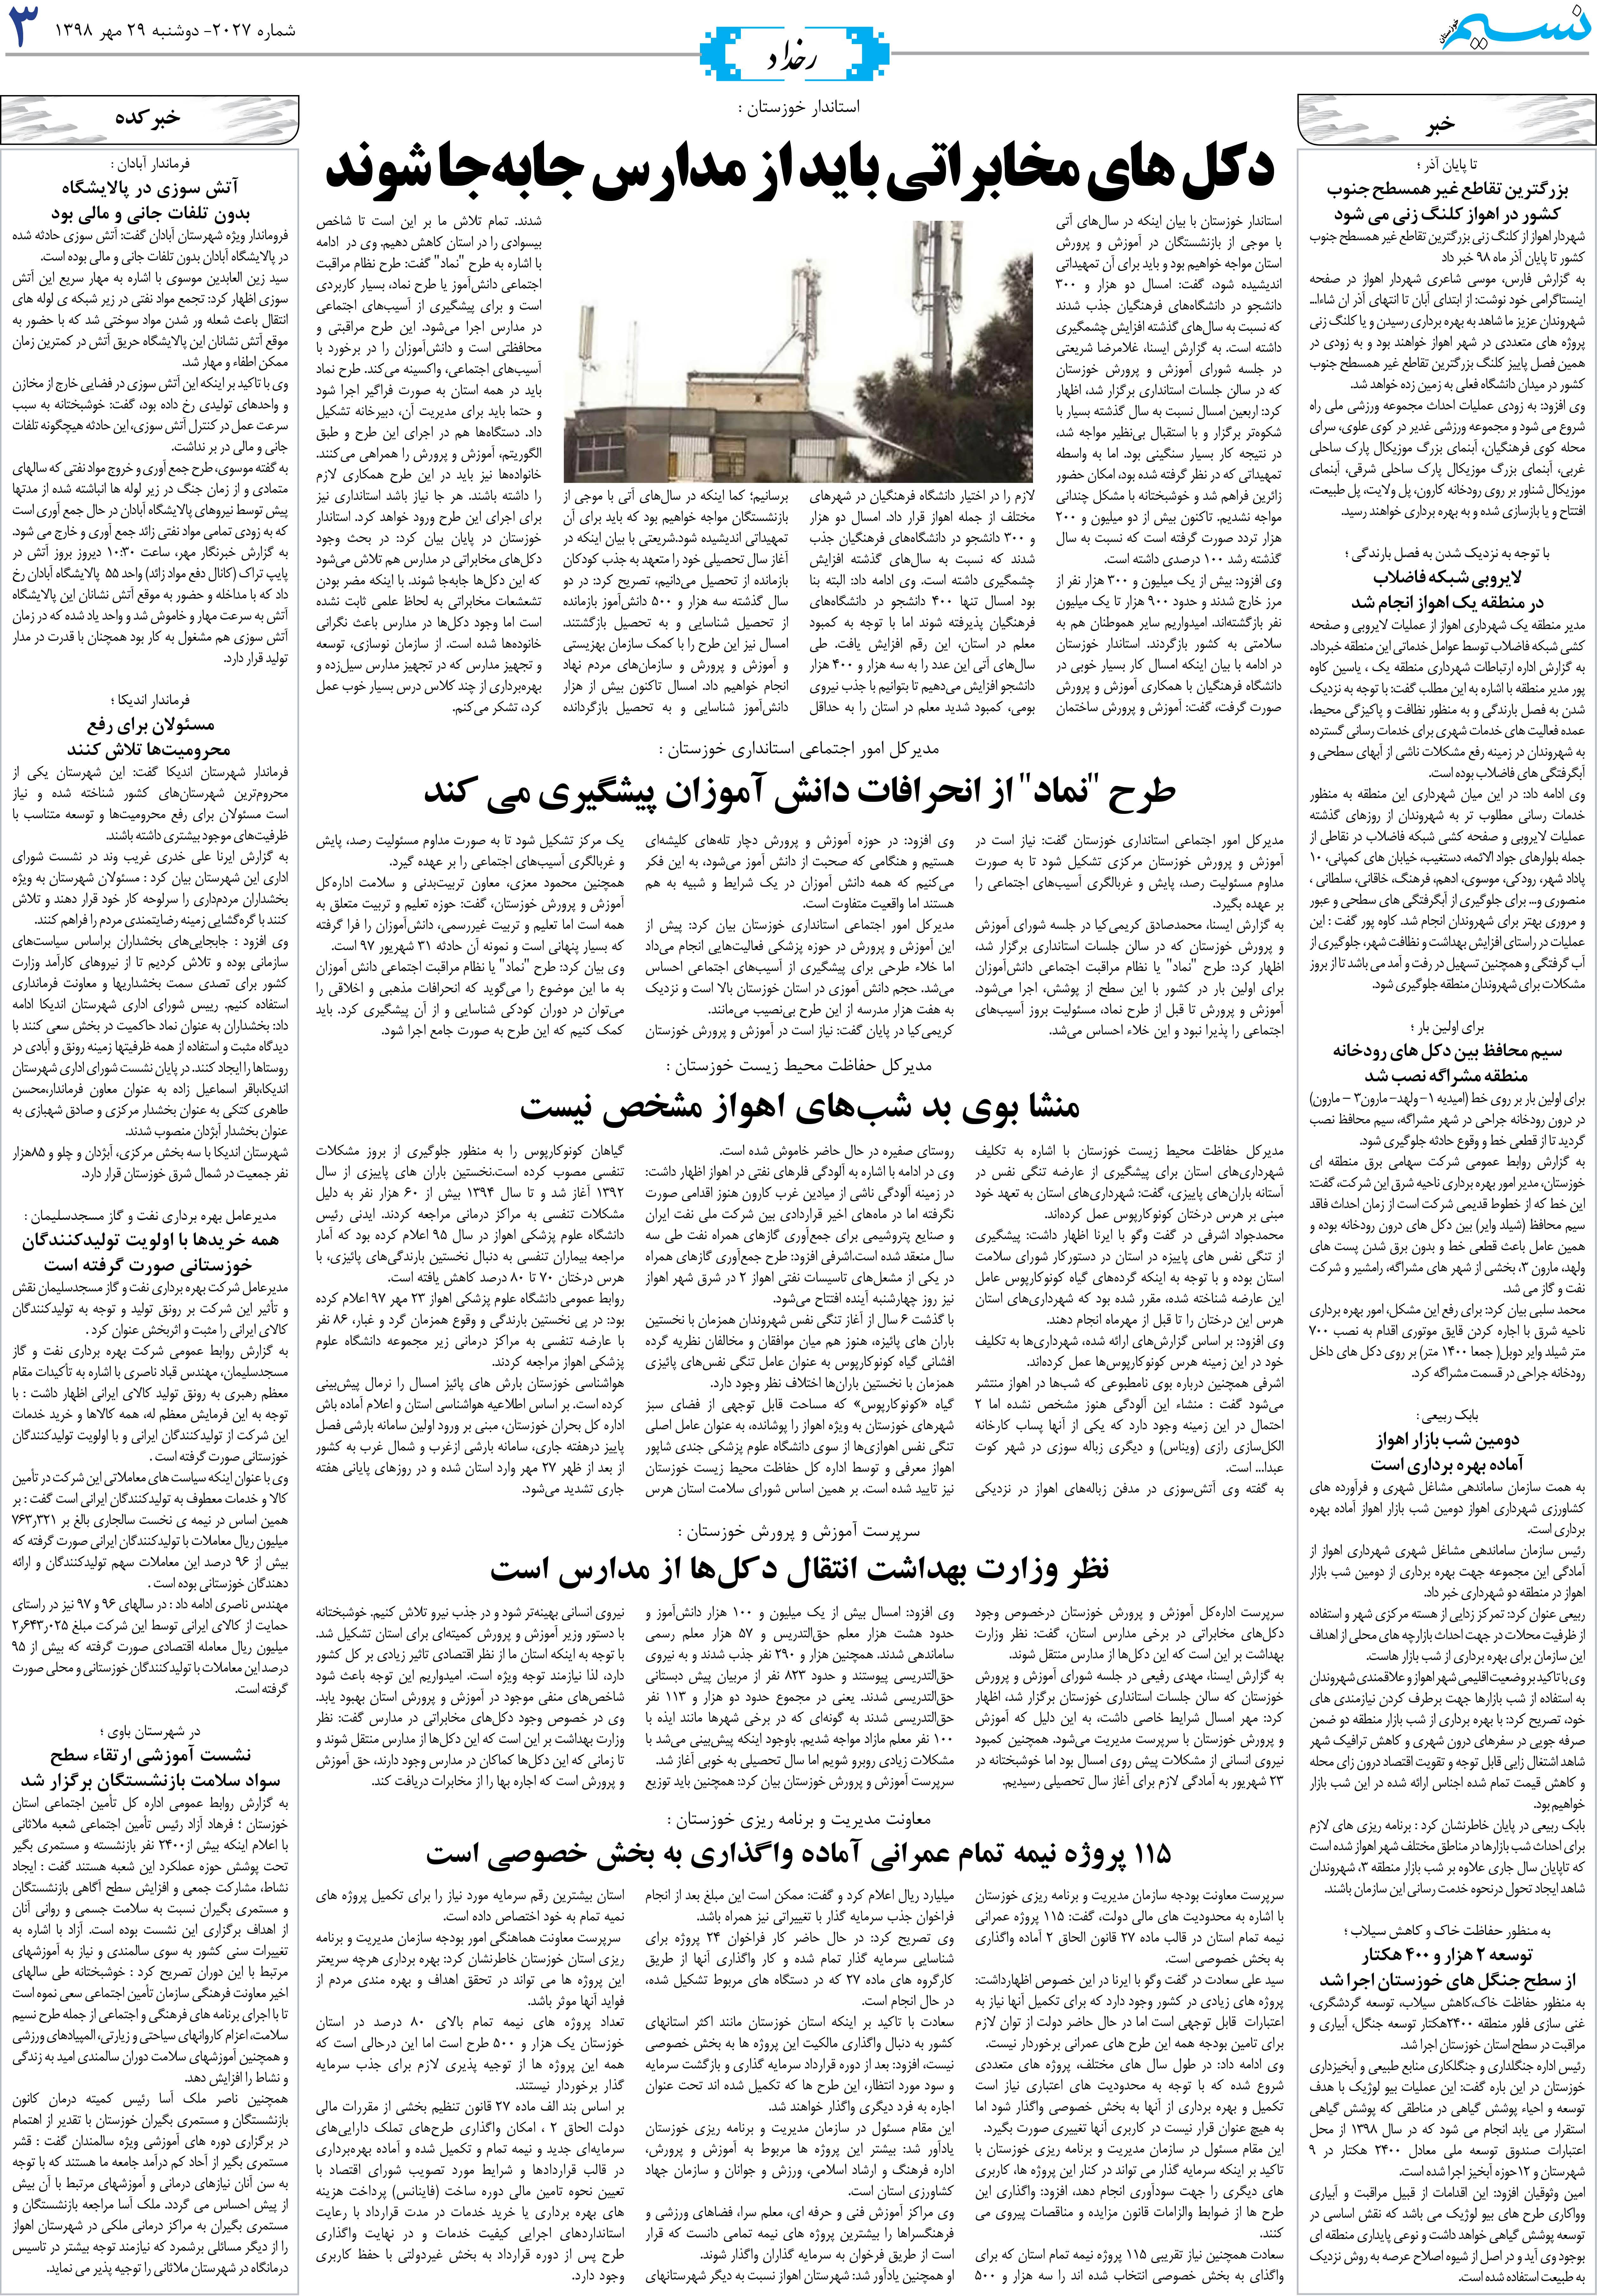 صفحه رخداد روزنامه نسیم شماره 2027